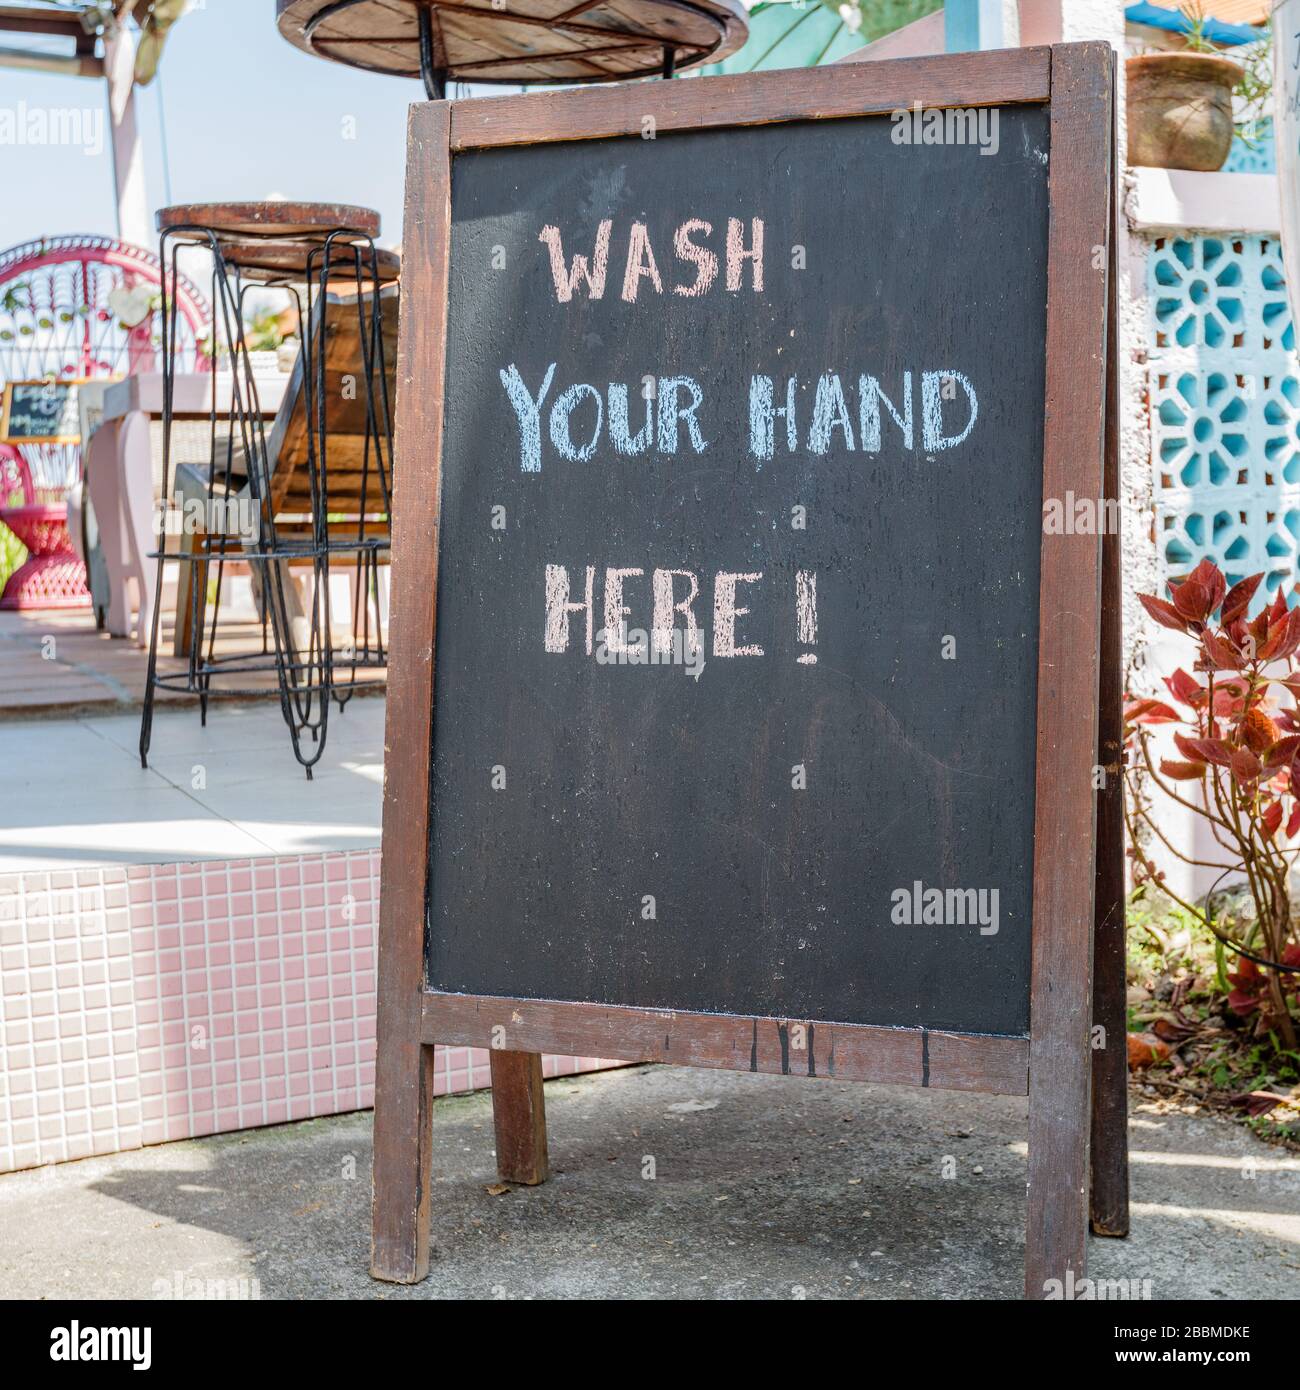 Café-Schild "waschen Sie sich hier die Hände" während der Quarantäne für COVID-19. Canggu, Bali beliebte Touristengegend. Indonesien. Quadratisches Bild. Stockfoto